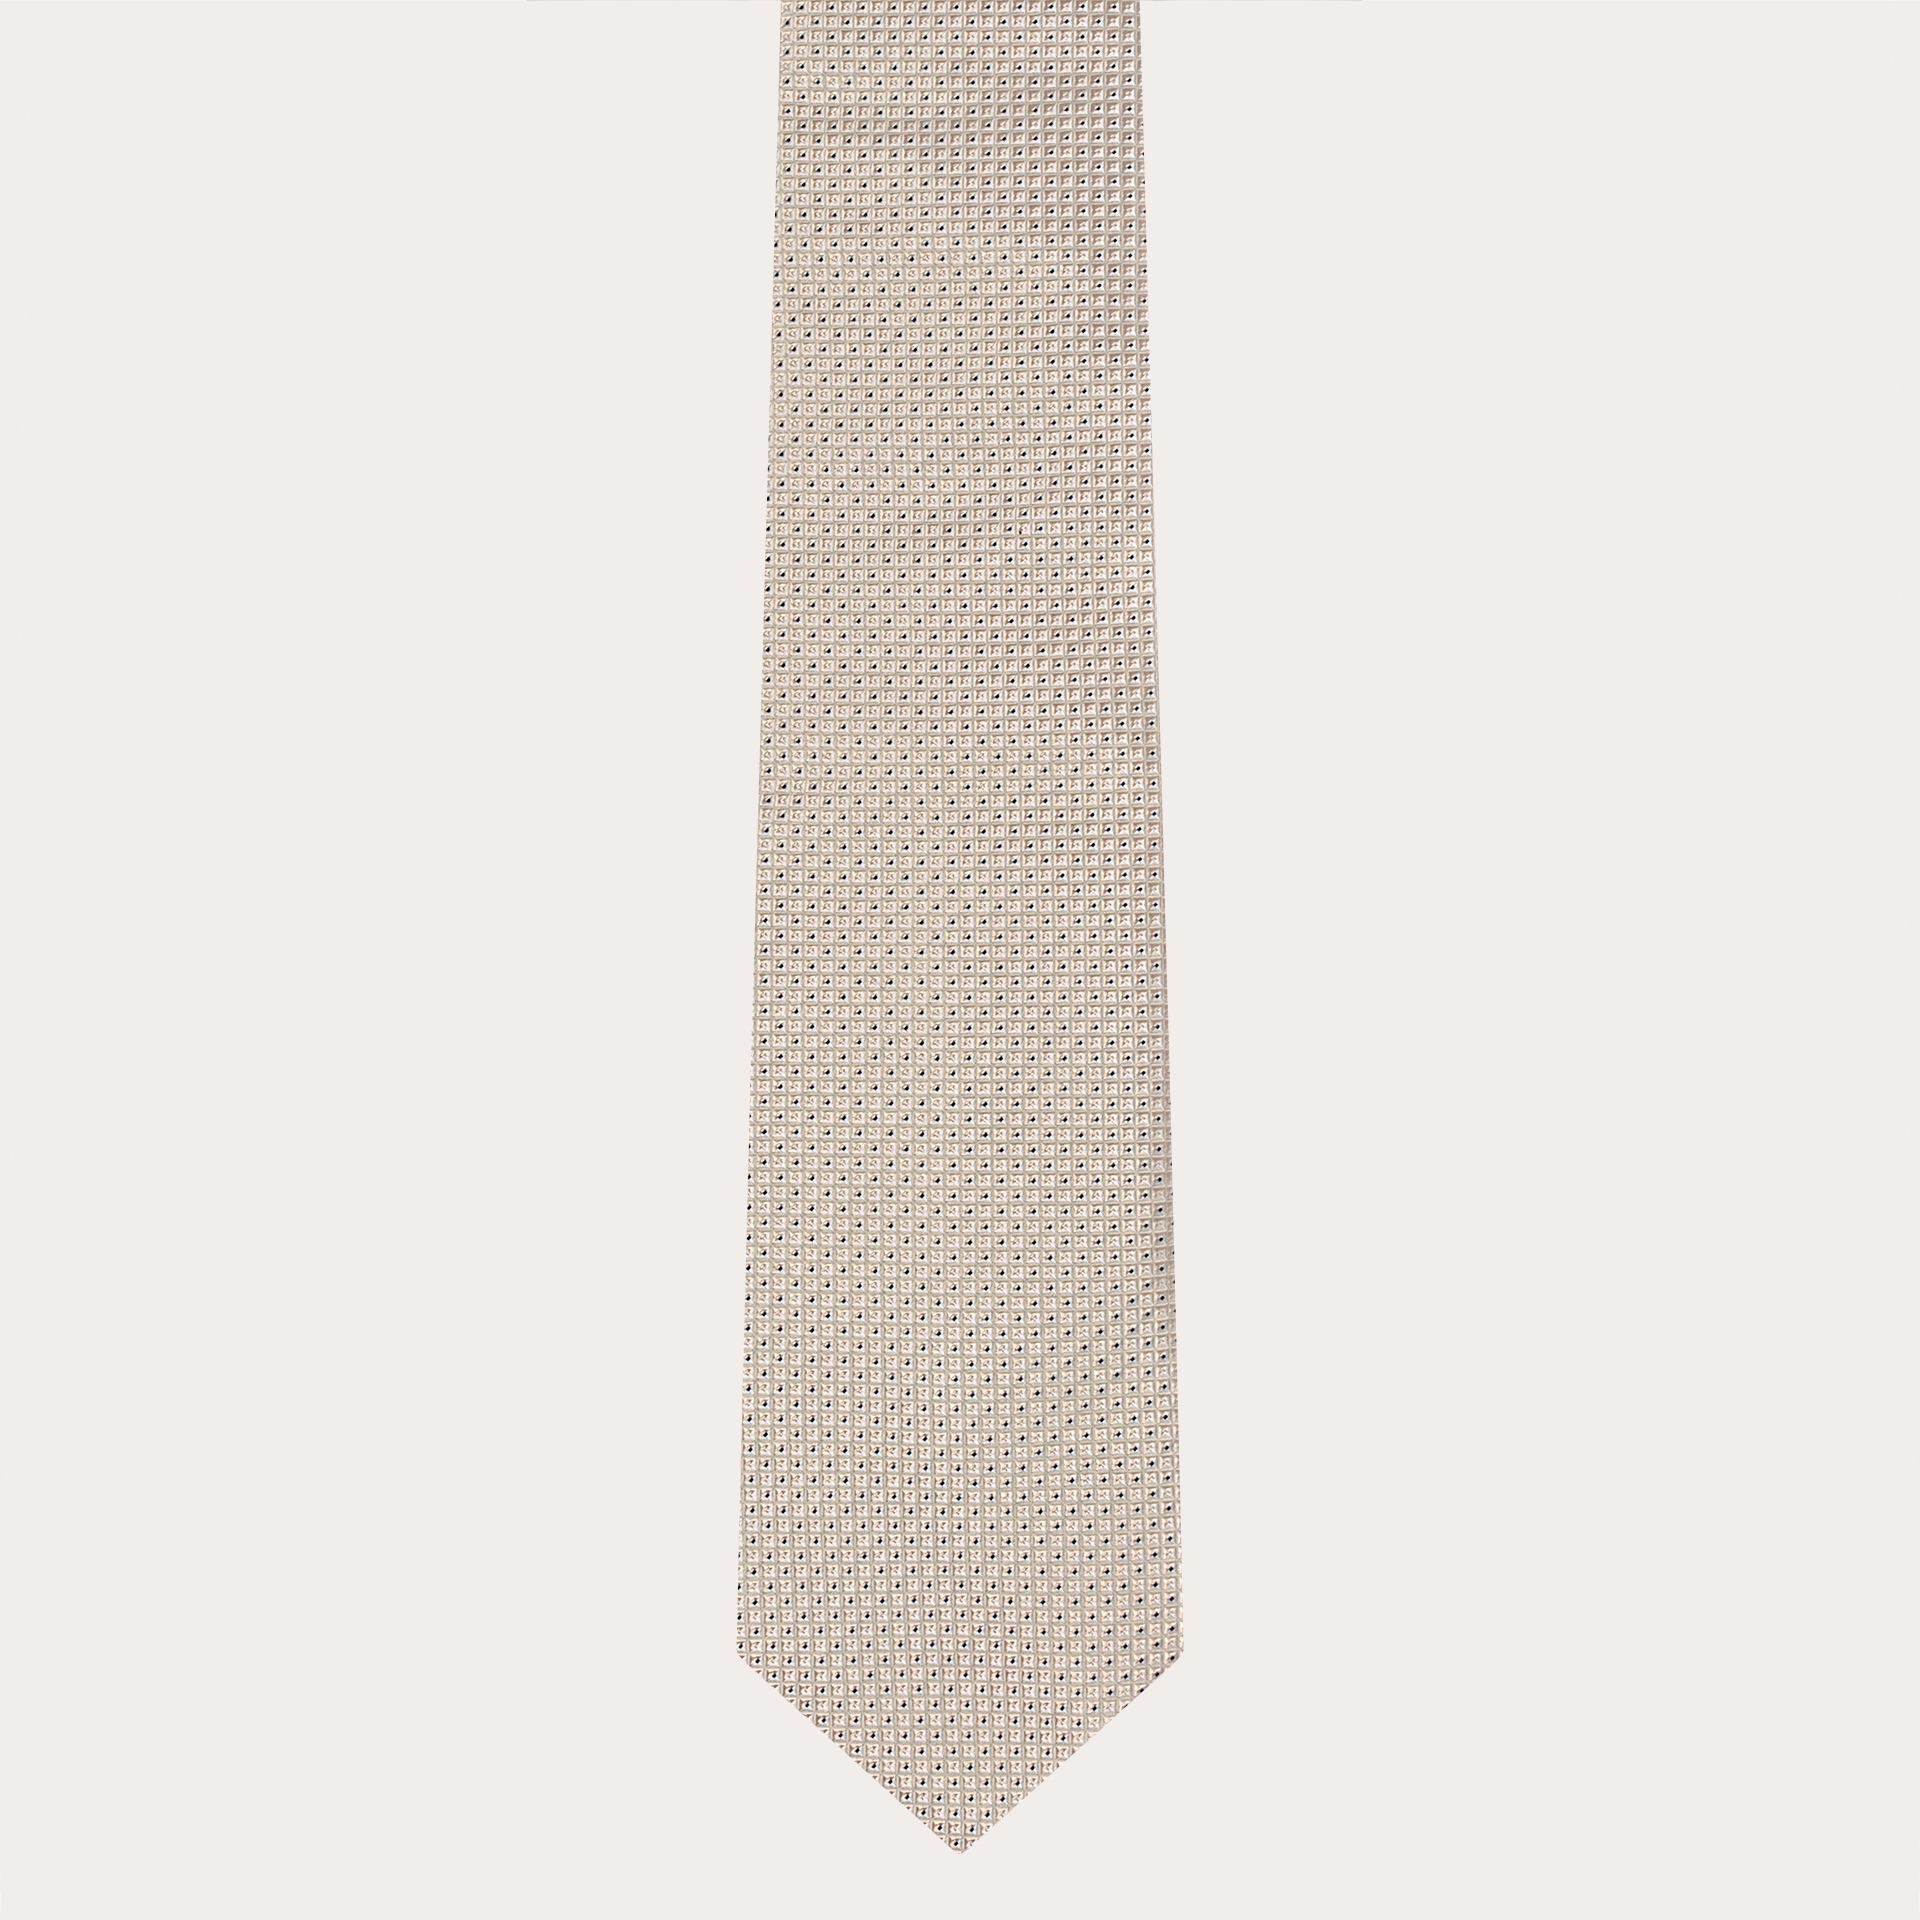 Corbata de seda jacquard, blanca con cuadrados verdes